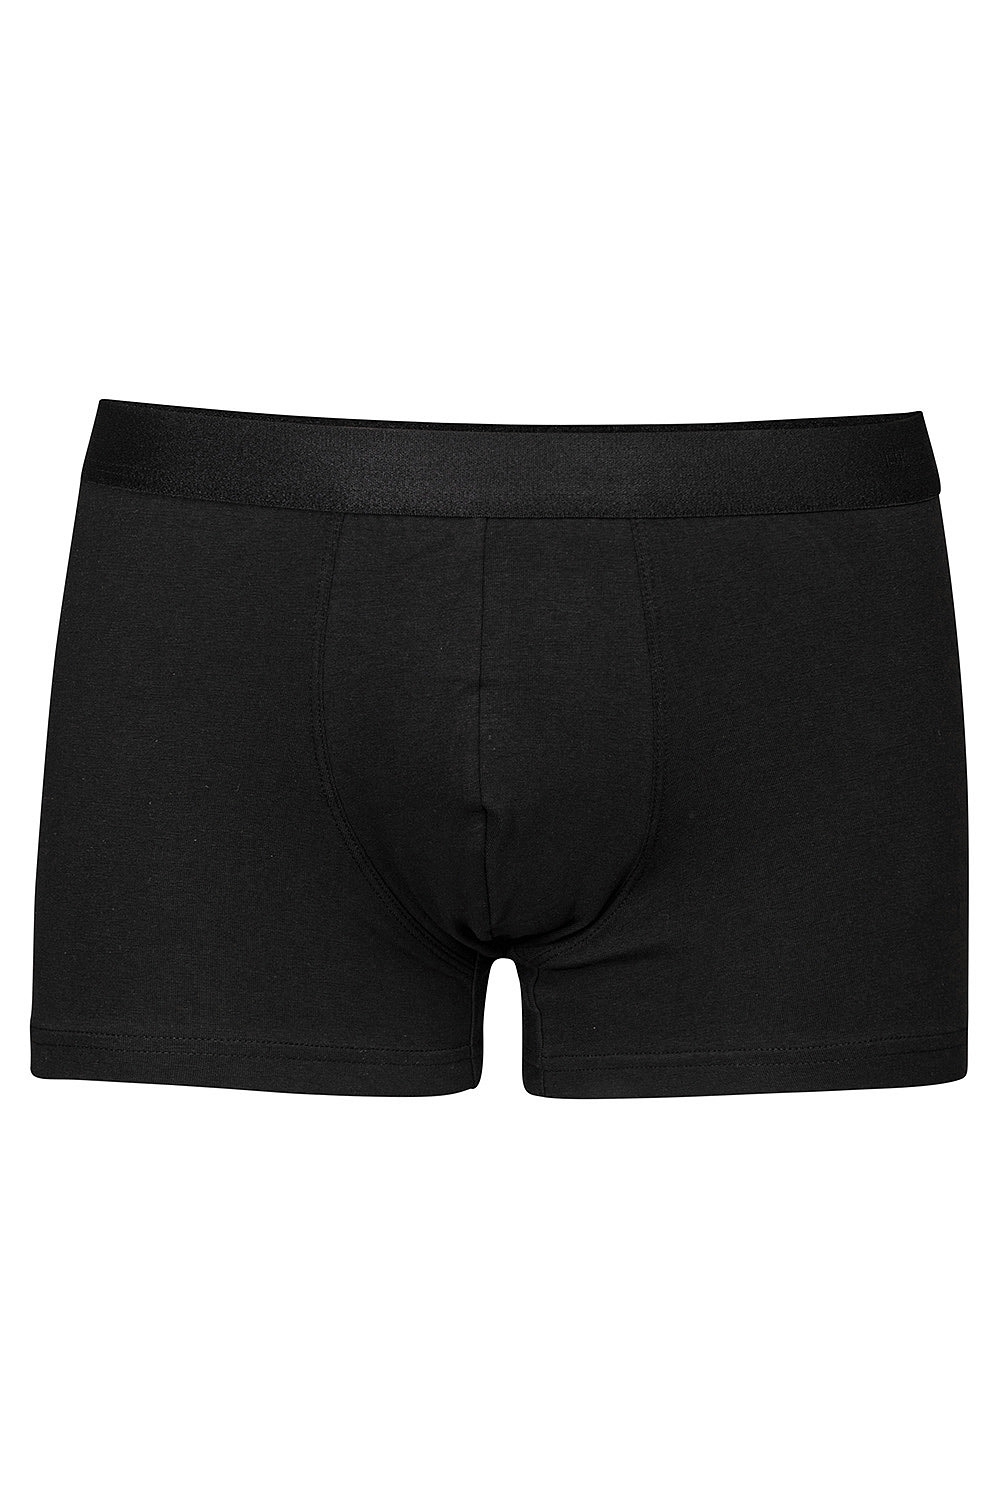 Black underwear 0